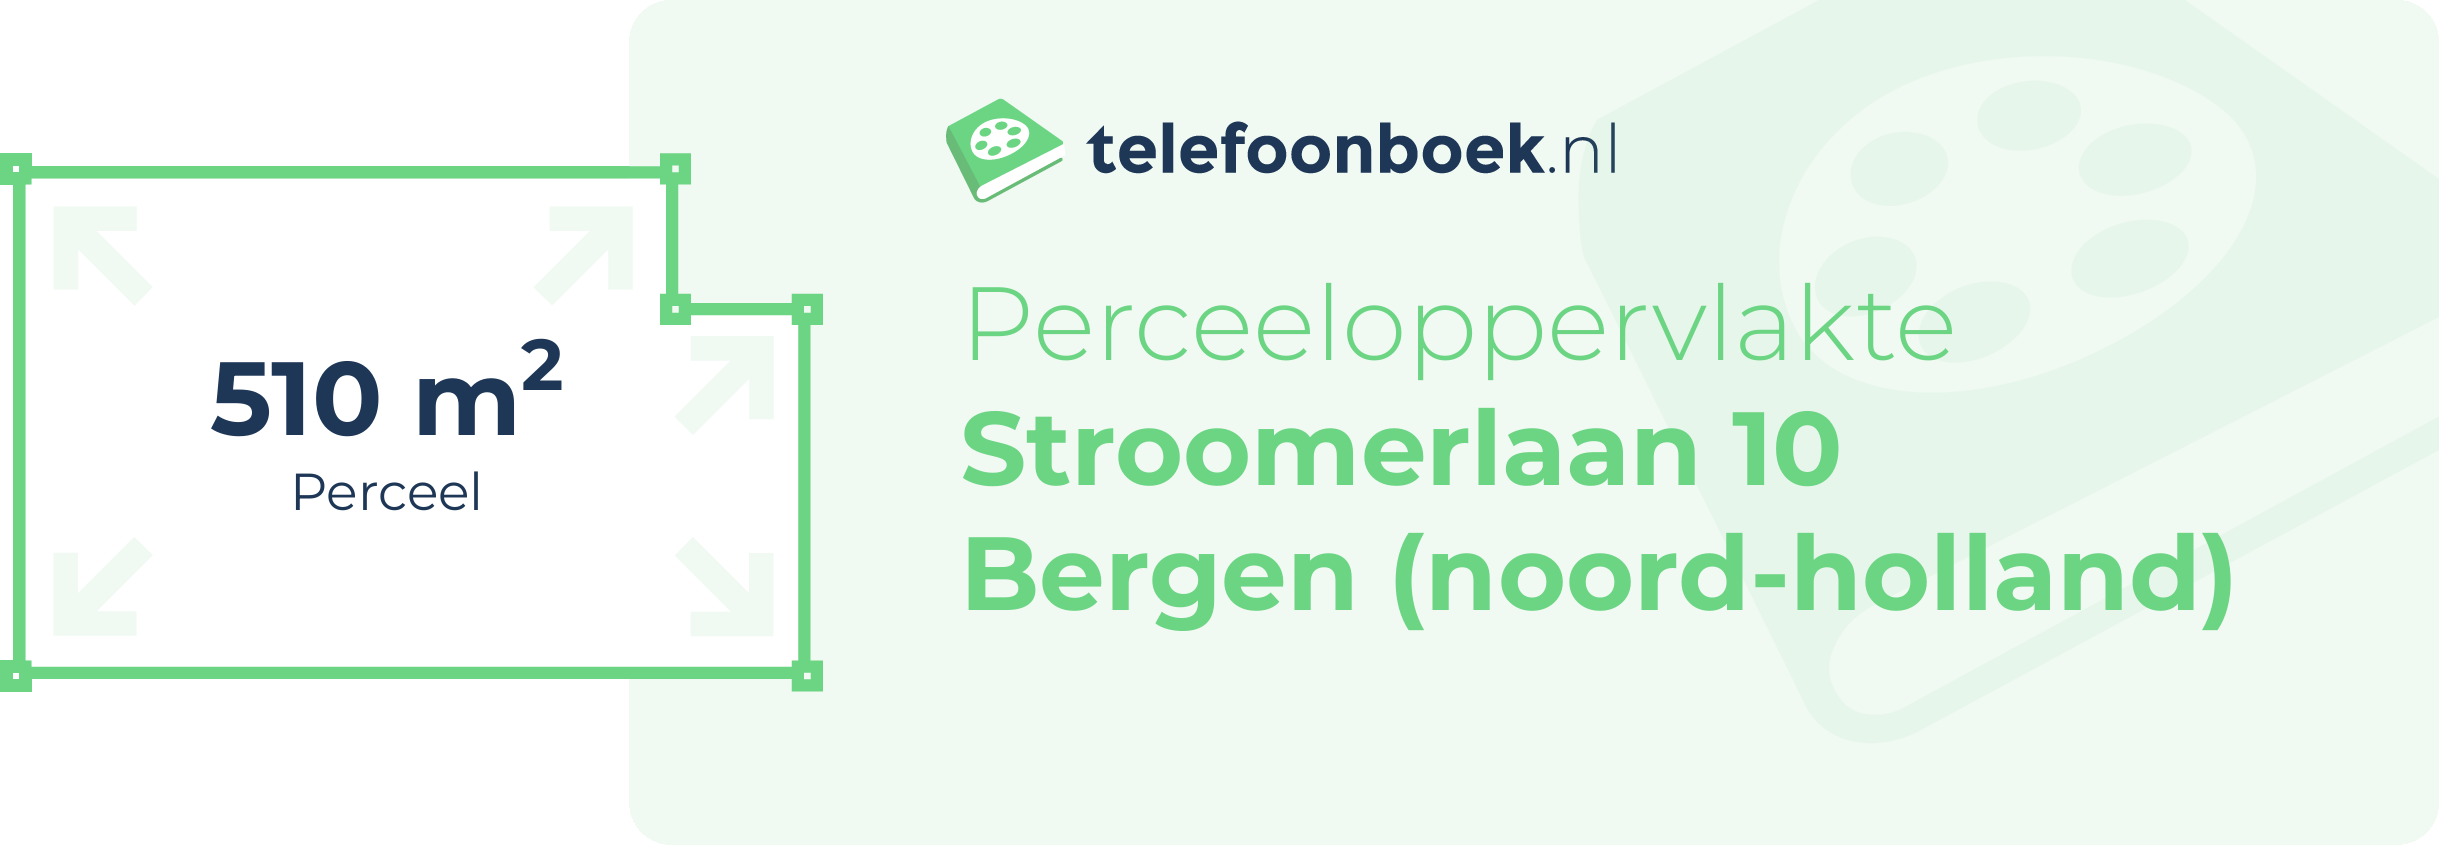 Perceeloppervlakte Stroomerlaan 10 Bergen (Noord-Holland)